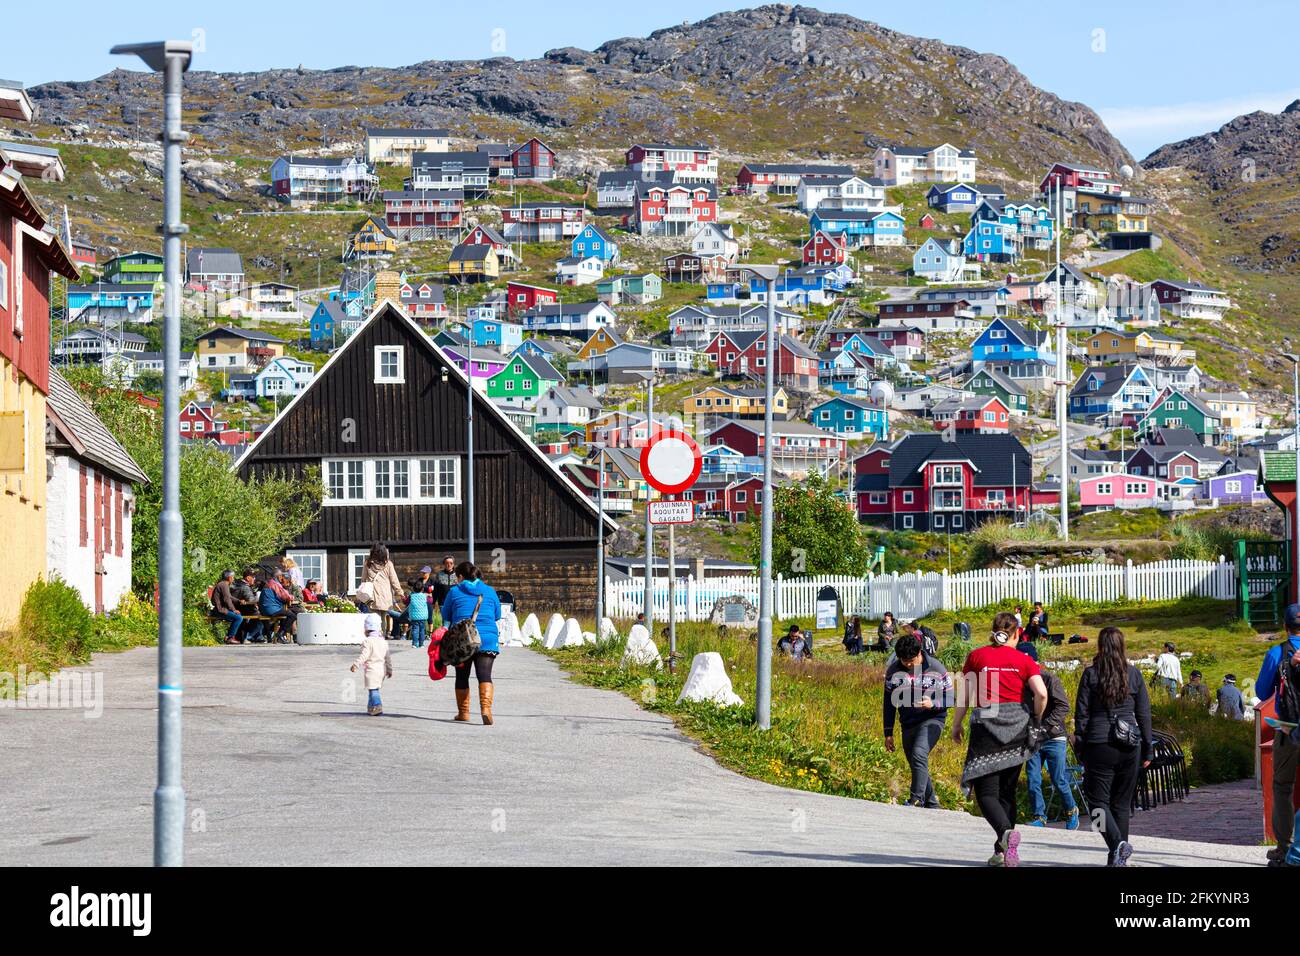 Bâtiments colorés dans le petit village groenlandais de Qaquortoq, anciennement Julianehåb, dans le sud du Groenland. Banque D'Images